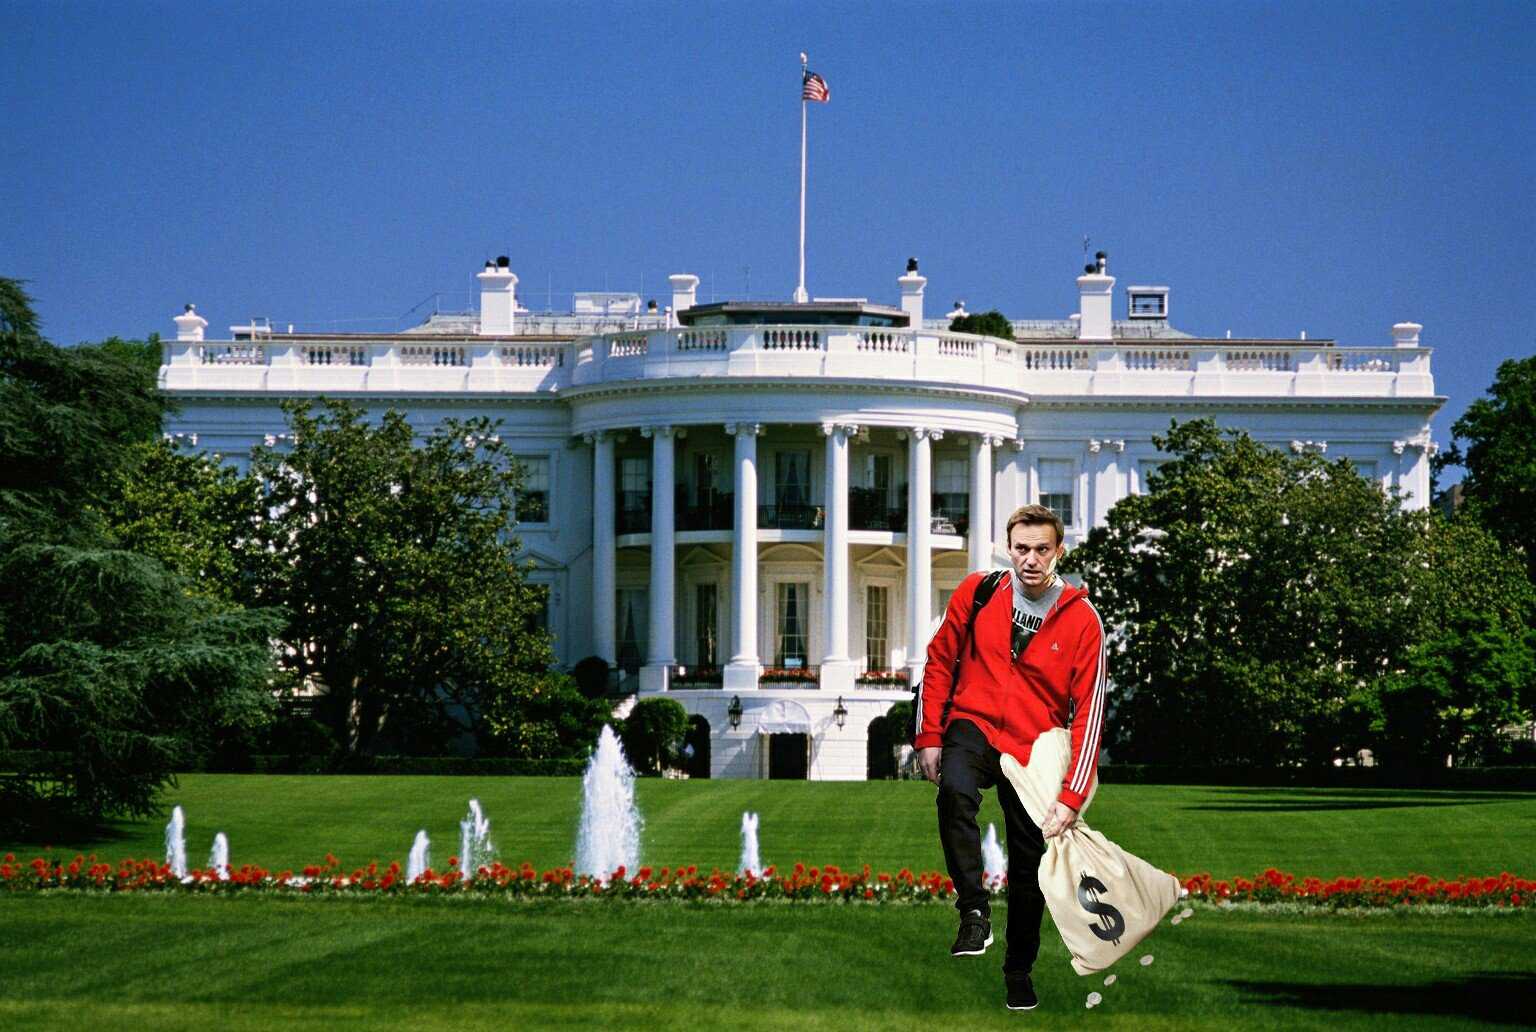 Белый дом в сша – одна из главных достопримечательностей америки